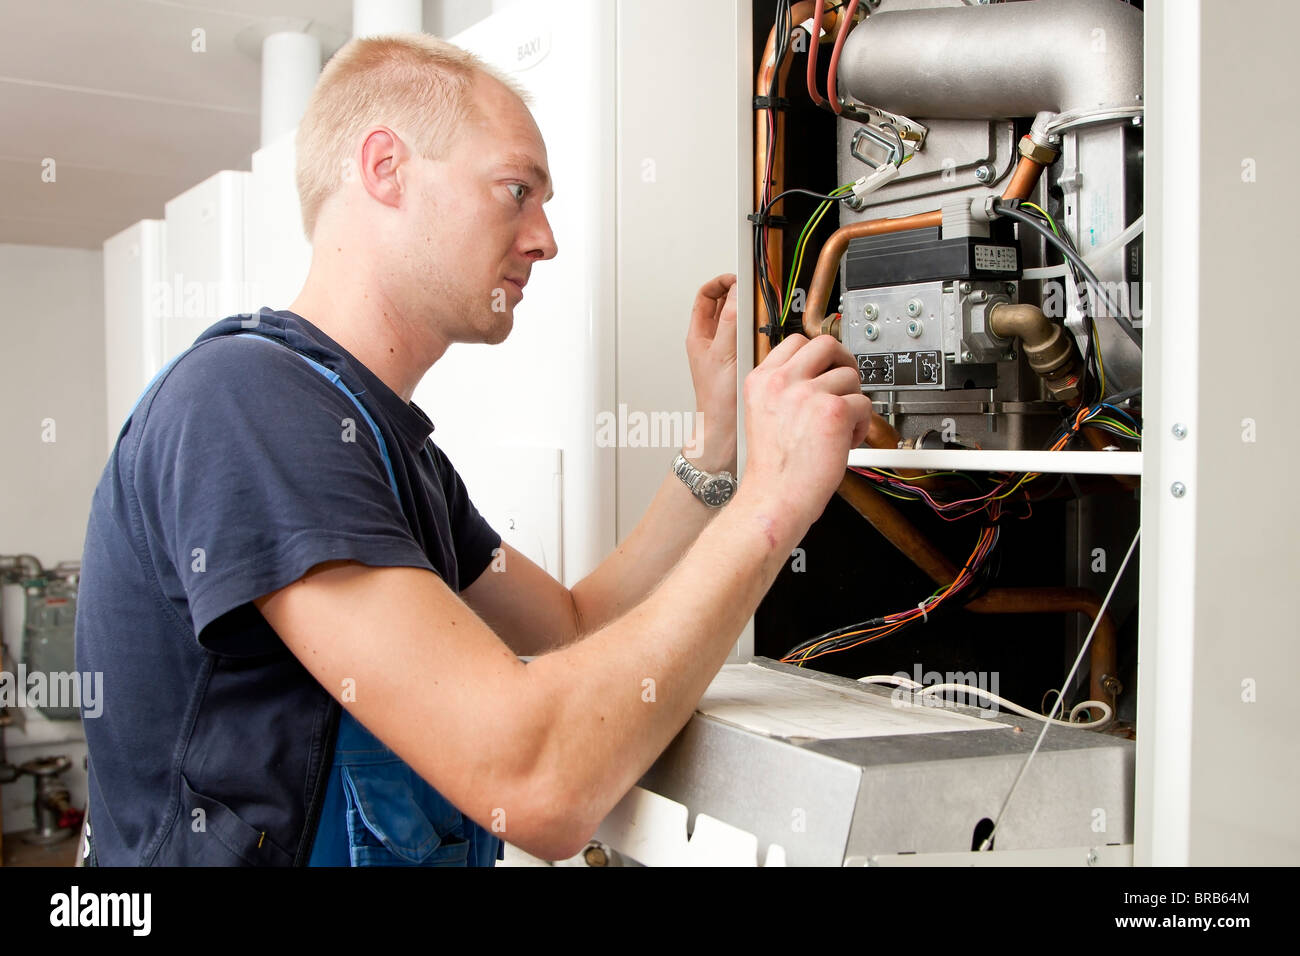 Technicien en chauffage et sanitaire Contrôle et réglage un chauffage au gaz Banque D'Images